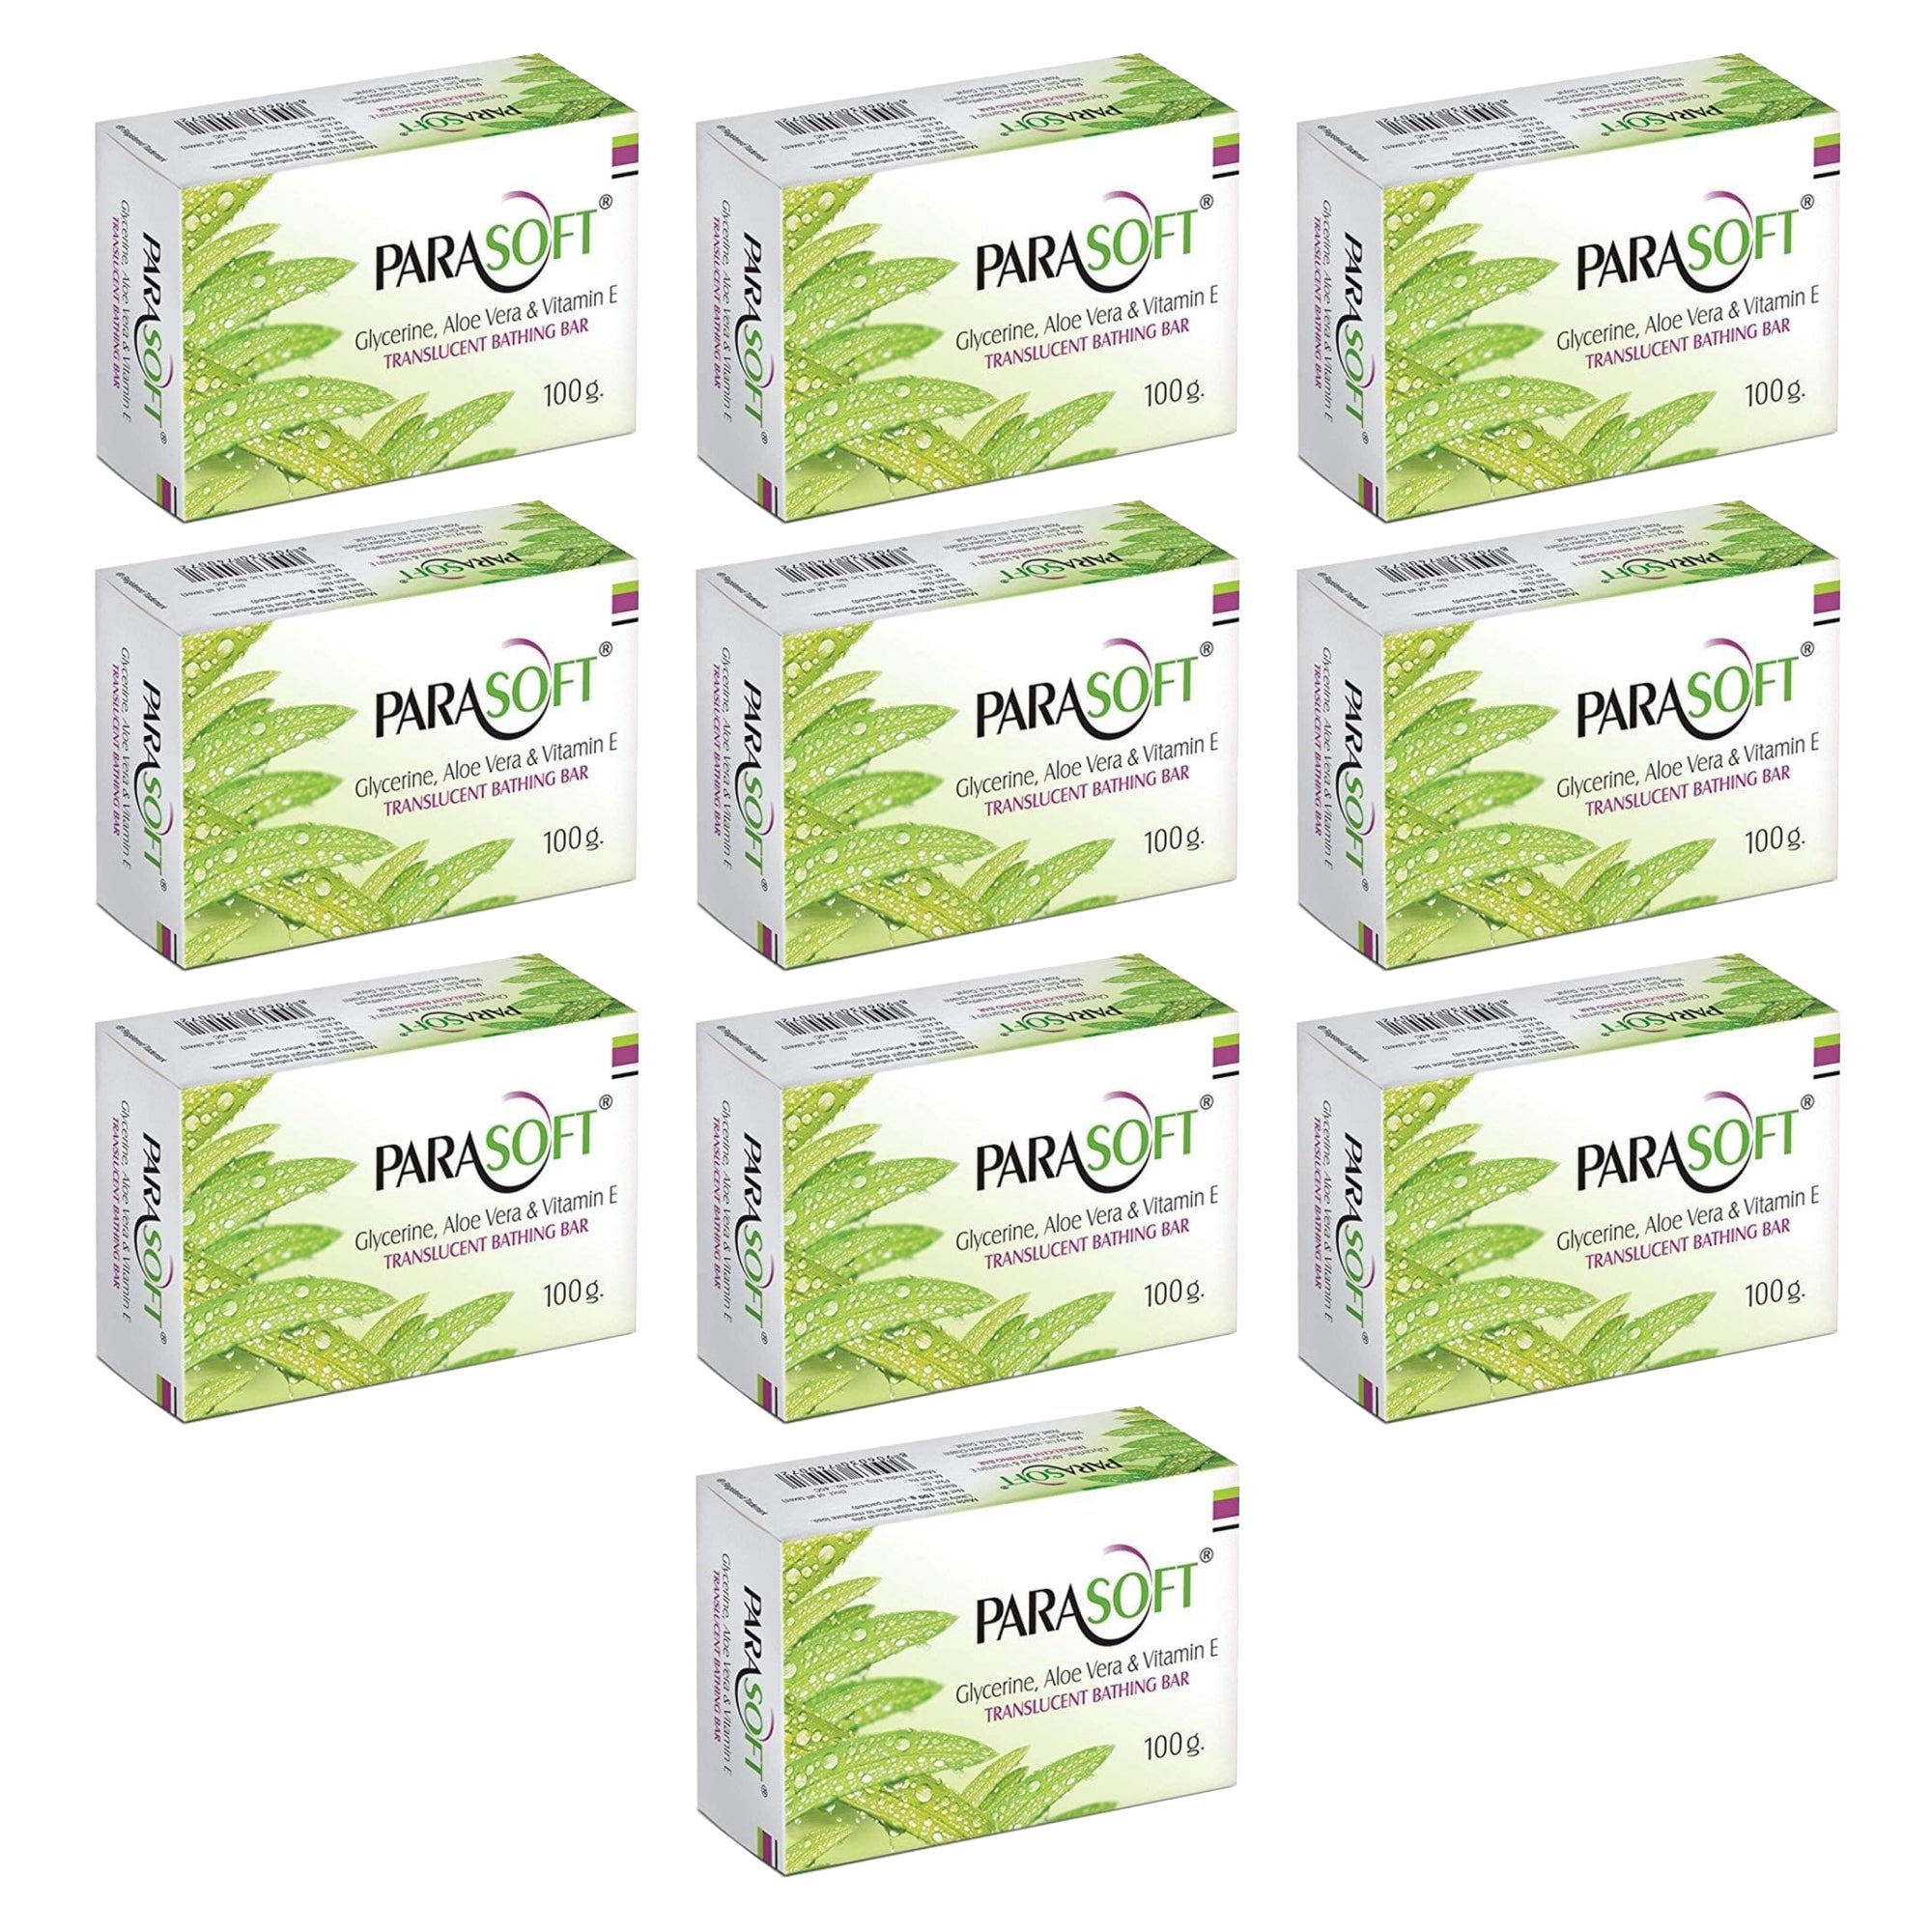 Shoprythm Dry,Parasoft Pack of 10 Salve Parasoft Soap 100g